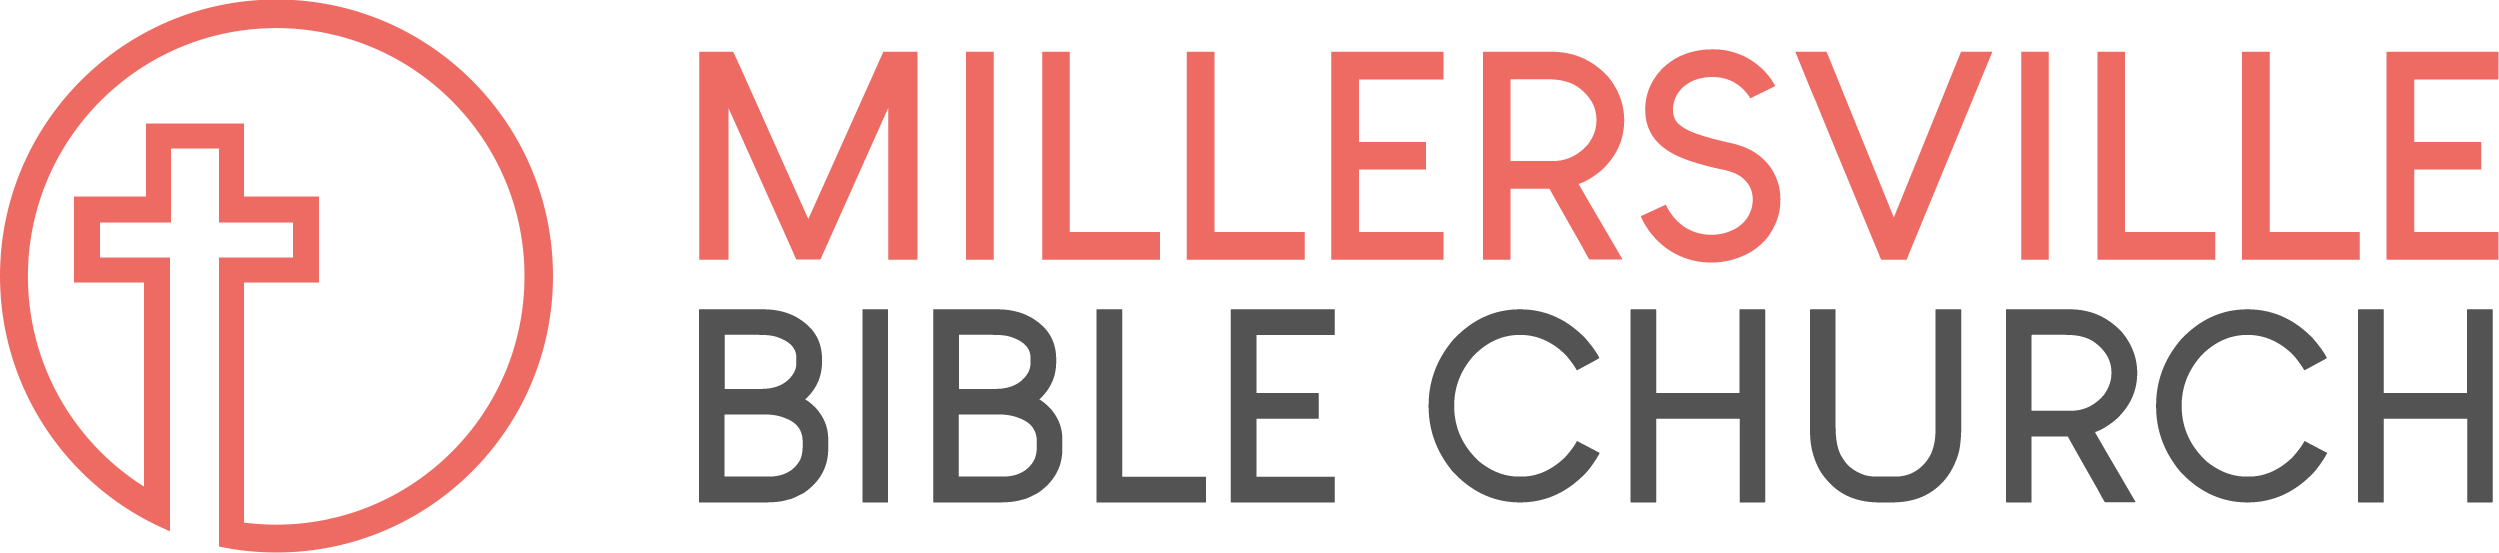 Millersville Bible Church